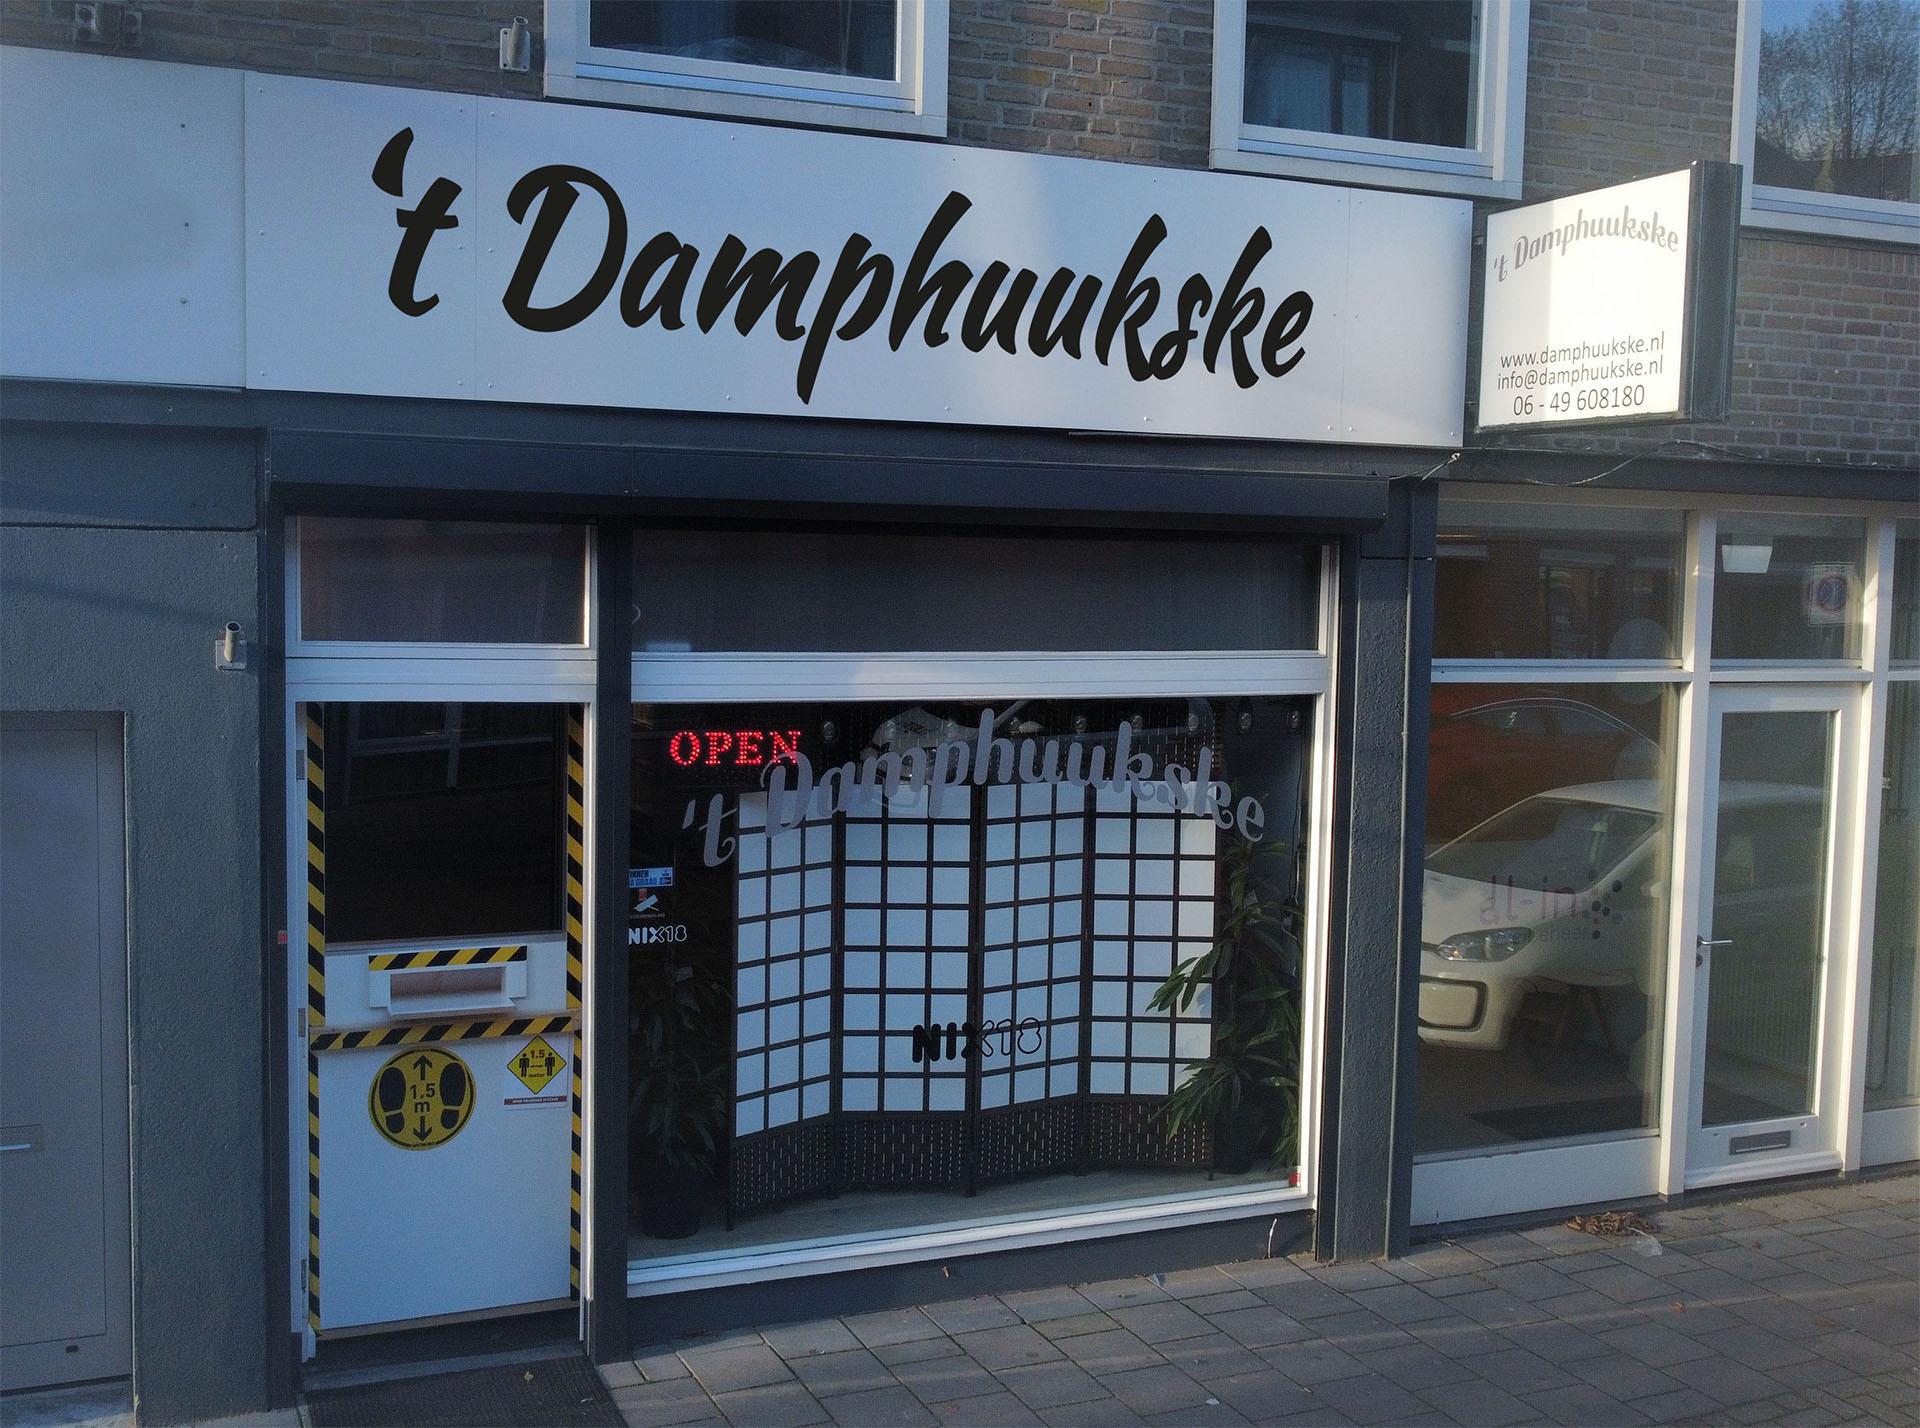 Damphuukske winkel click&collect